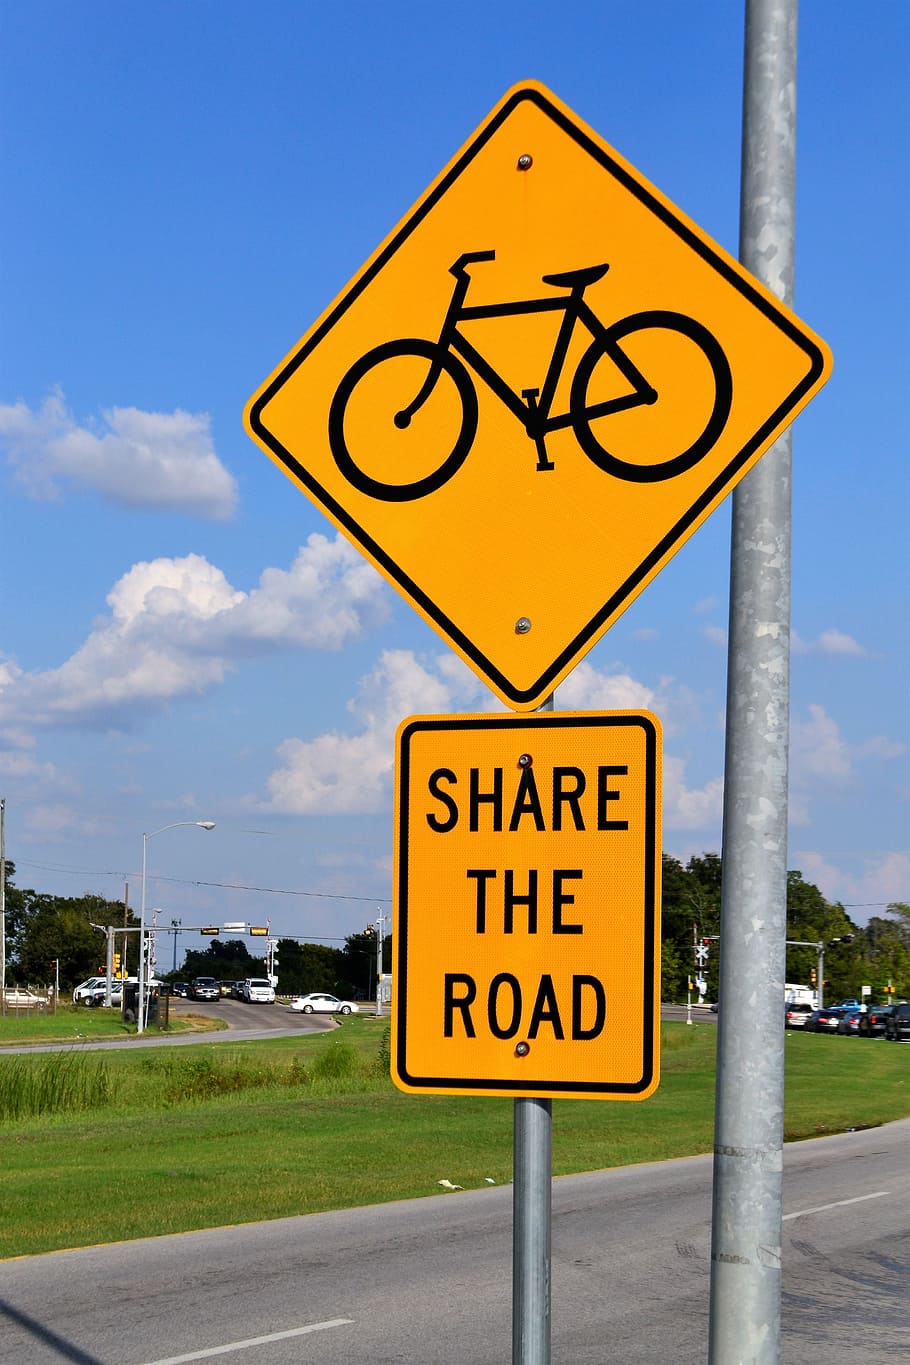 ป้ายบริเวณจักรยานตอนกลางวัน, เครื่องหมายเลนจักรยาน, แชร์ถนน, รถจักรยาน, ถนน, จักรยาน, ลงชื่อ, วงจร, เลน, เมือง, เส้นทาง, แชร์, กีฬา, นักขี่จักรยาน, จักรยานถนน, การจราจร, ขี่, กลางแจ้ง, ไลฟ์สไตล์, มีสุขภาพดี, การขนส่ง , ถนน, เคารพ, กฎหมาย, หญ้า, สีเขียว, เมฆ, ท้องฟ้า, จักรยานเสือภูเขา, ขี่จักรยาน, ขนส่ง, การท่องเที่ยว, นักปั่นจักรยาน, การพักผ่อนหย่อนใจ, การพักผ่อนหย่อนใจ, คน, คล่องแคล่ว, ในเมือง, ฤดูร้อน, ออกกำลังกาย, ออกกำลังกาย, การฝึกอบรม, การออกกำลังกาย, วอลล์เปเปอร์ HD, วอลเปเปอร์โทรศัพท์